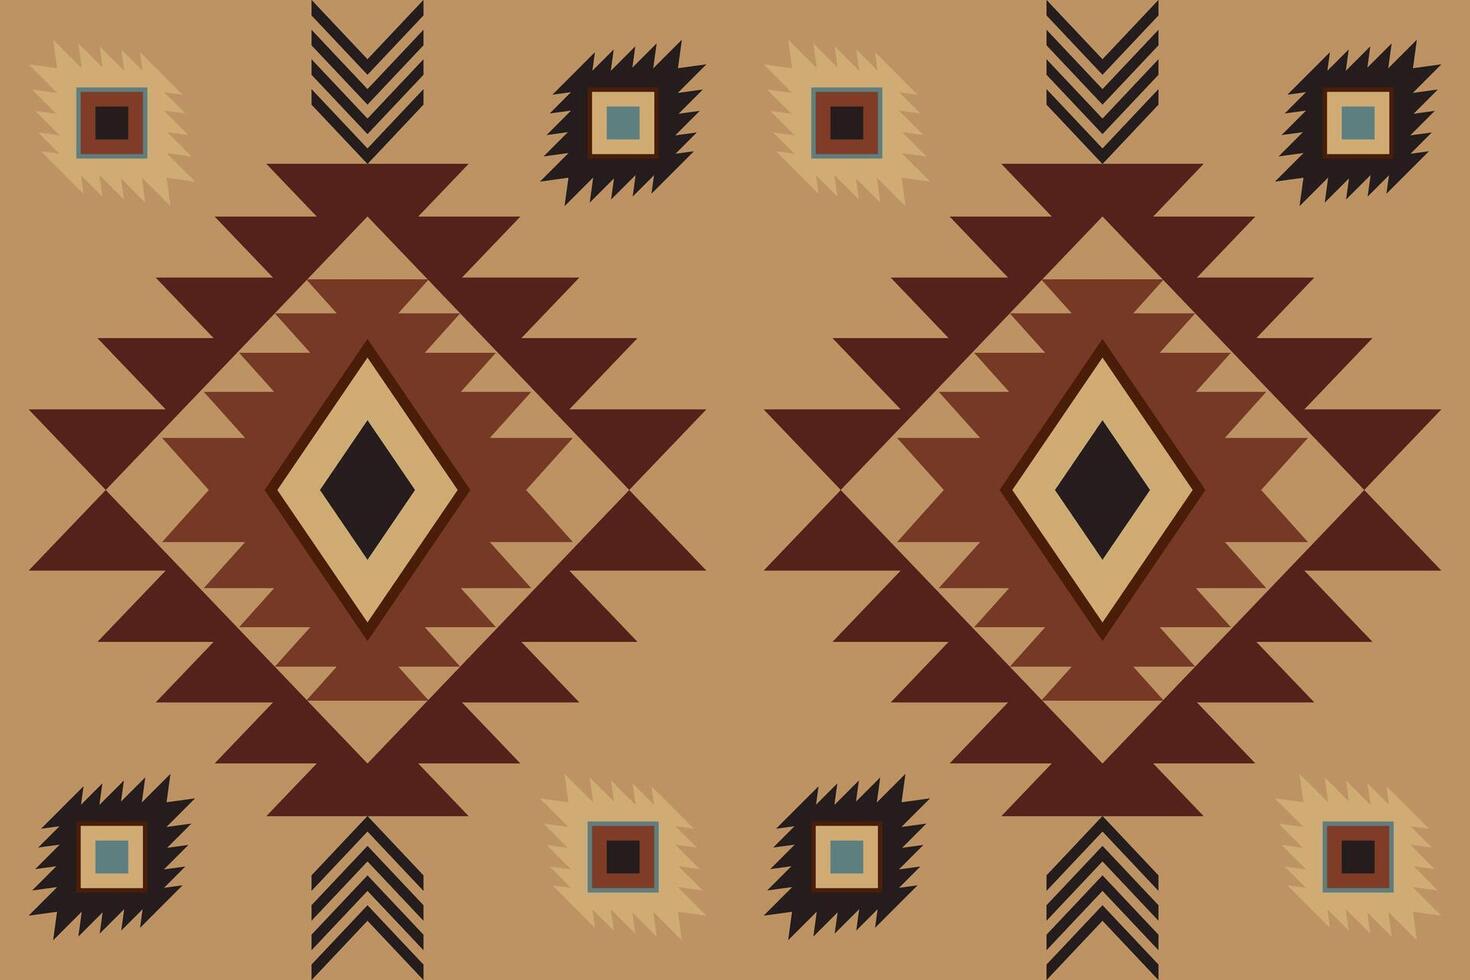 Navajo tribal vector naadloos patroon. inheems Amerikaans ornament. etnisch zuiden western decor stijl. boho meetkundig ornament. vector naadloos patroon. Mexicaans deken, tapijt. geweven tapijt illustratie.